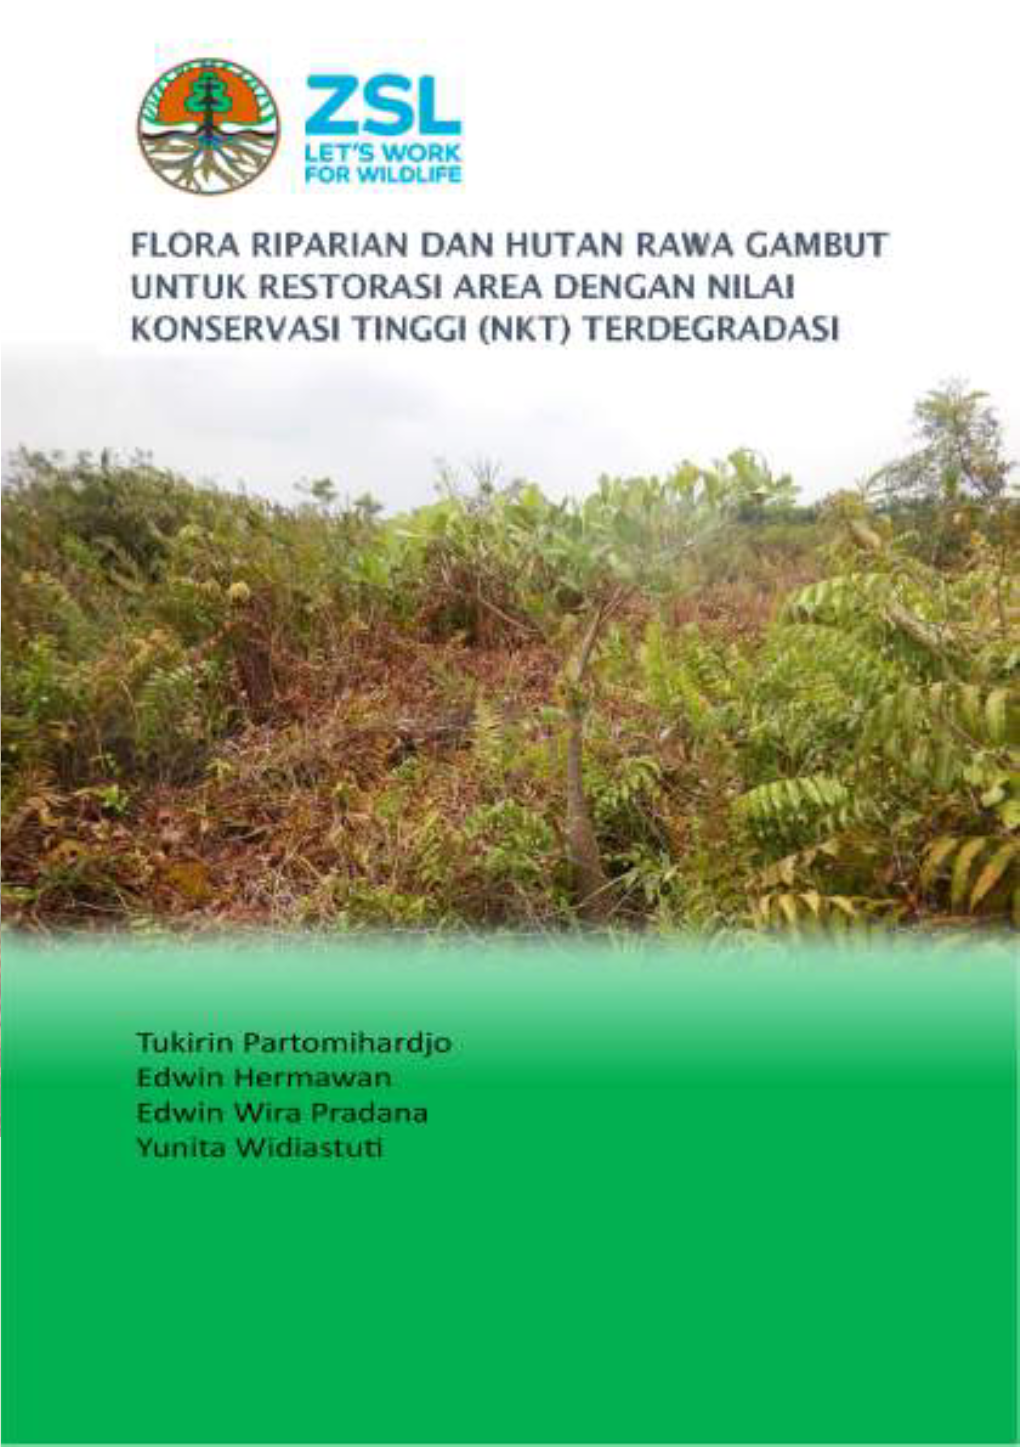 Flora Riparian Dan Hutan Rawa Gambut Untuk Restorasi Area Dengan Nilai Konservasi Tinggi (Nkt) Terdegradasi